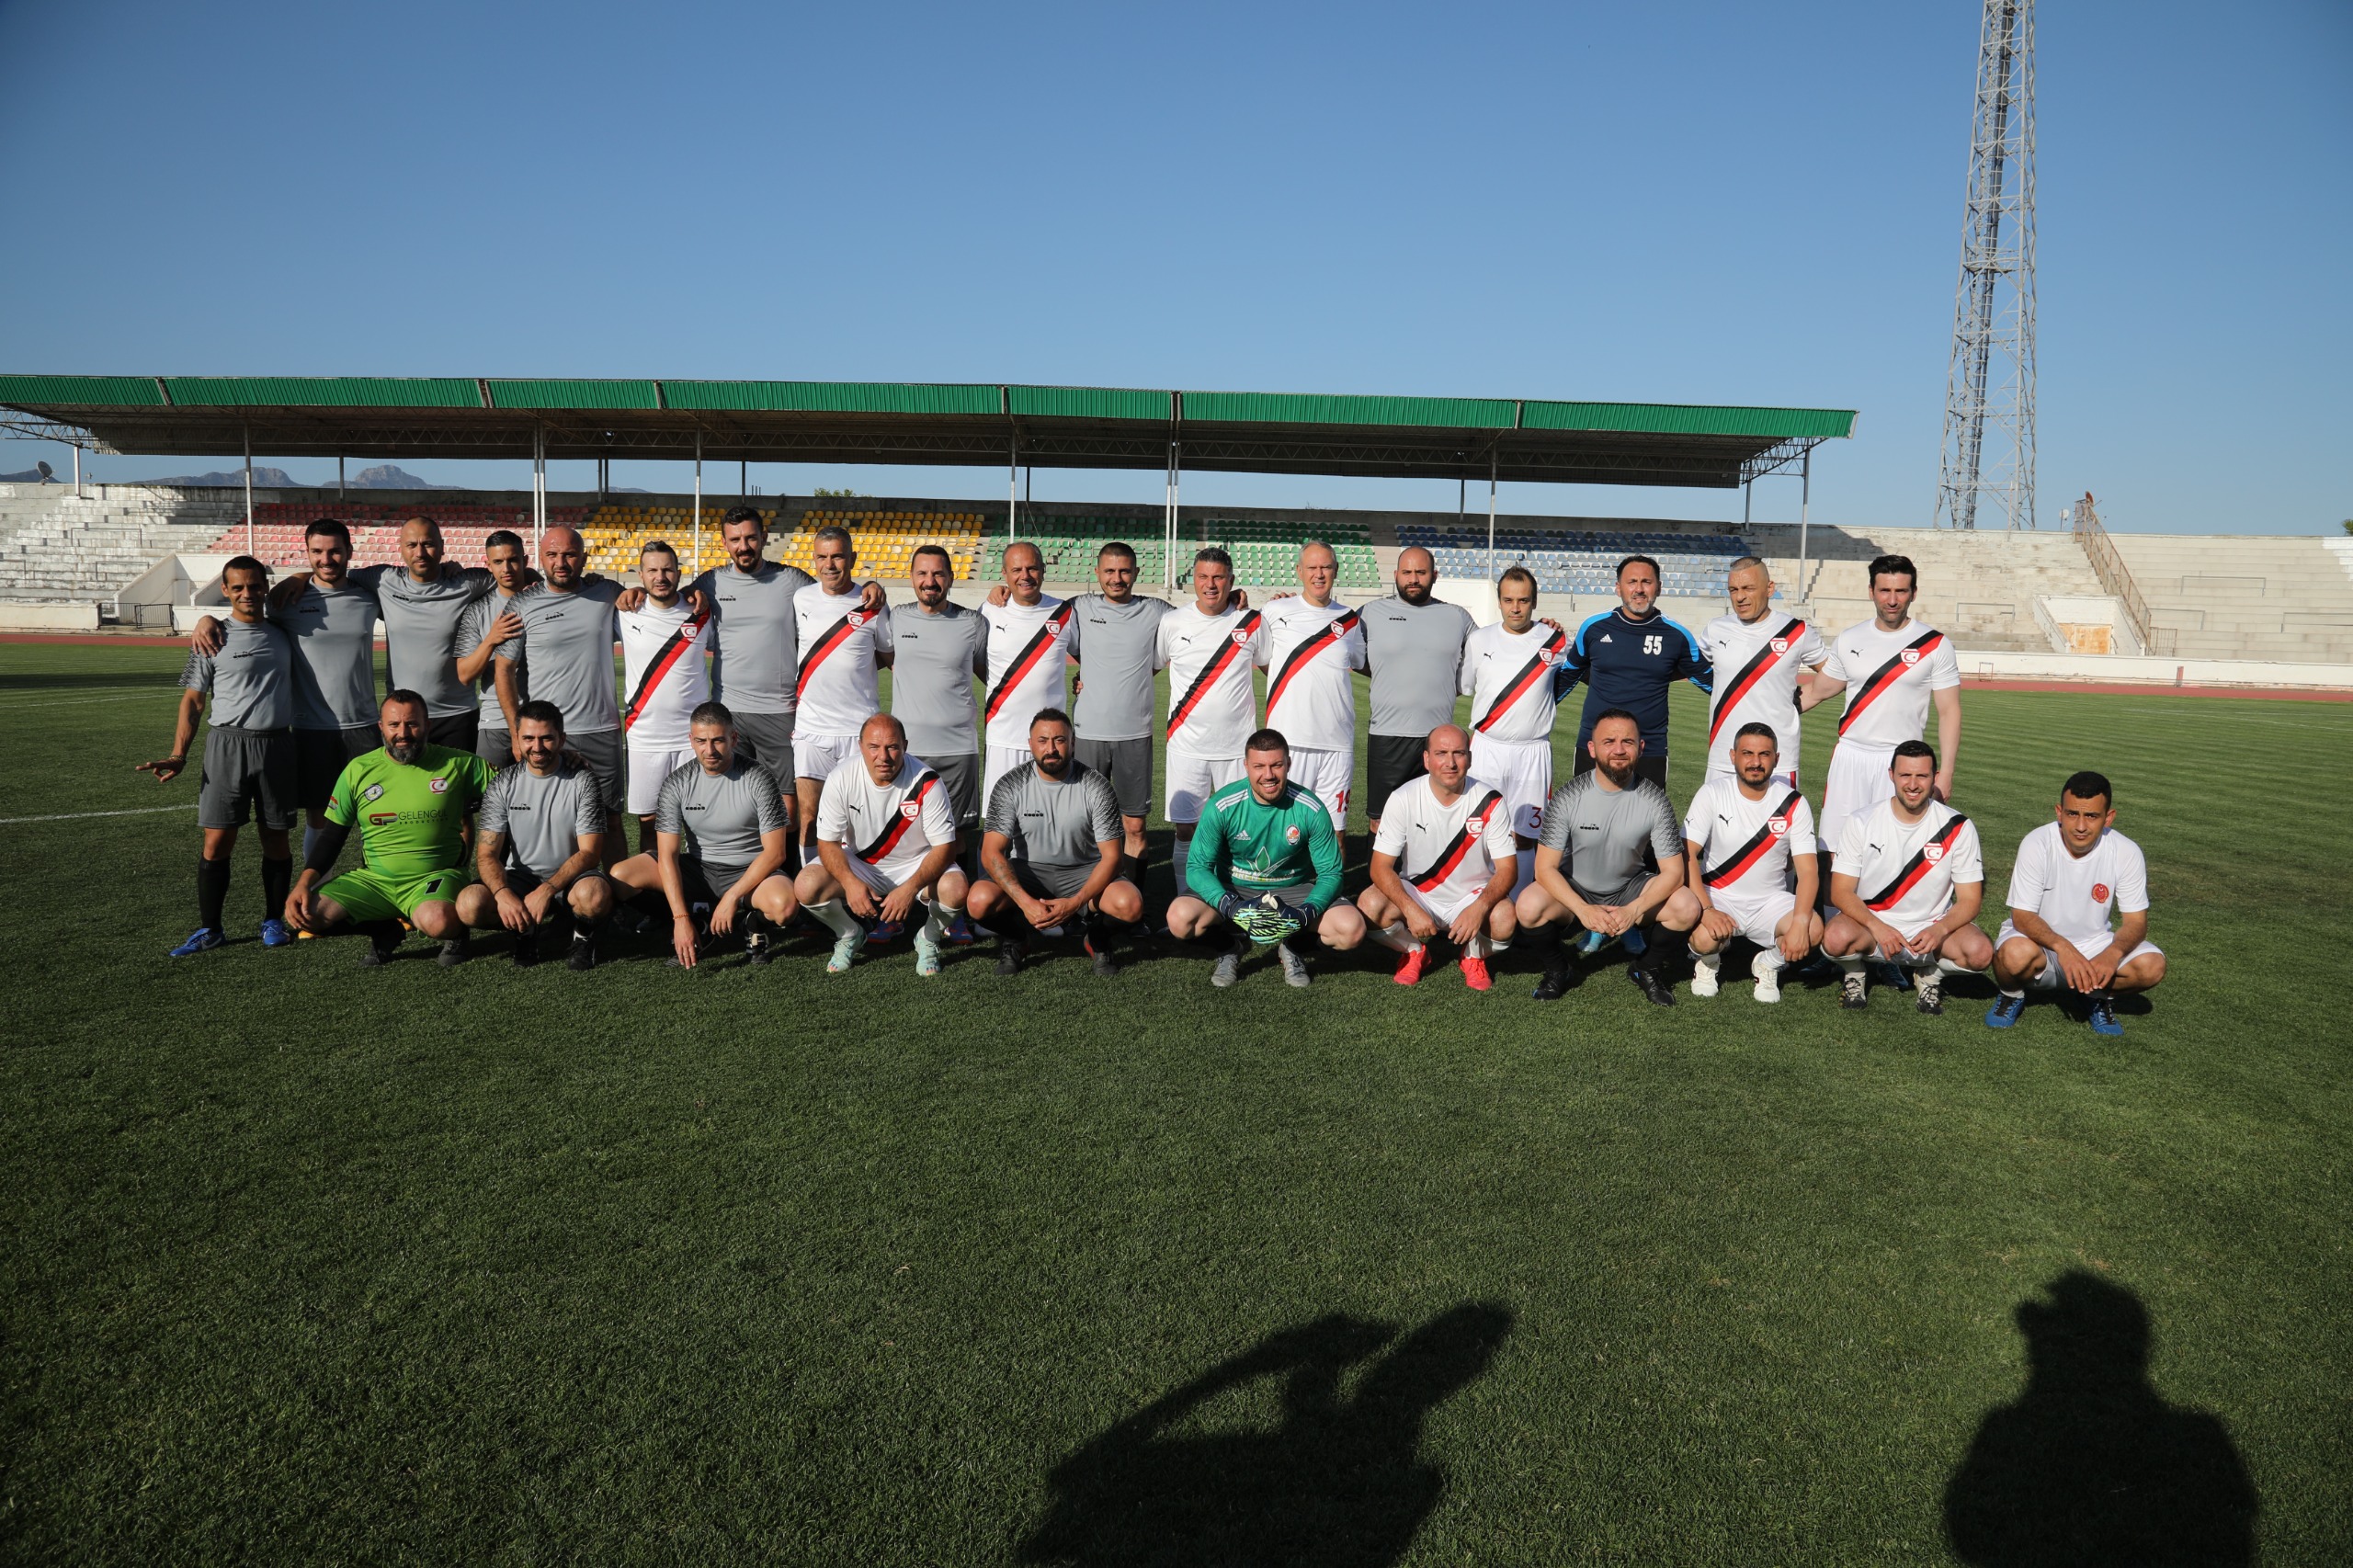 Cumhuriyet Meclisi ve Barolar Birliği futbol takımları dostluk maçı yaptı